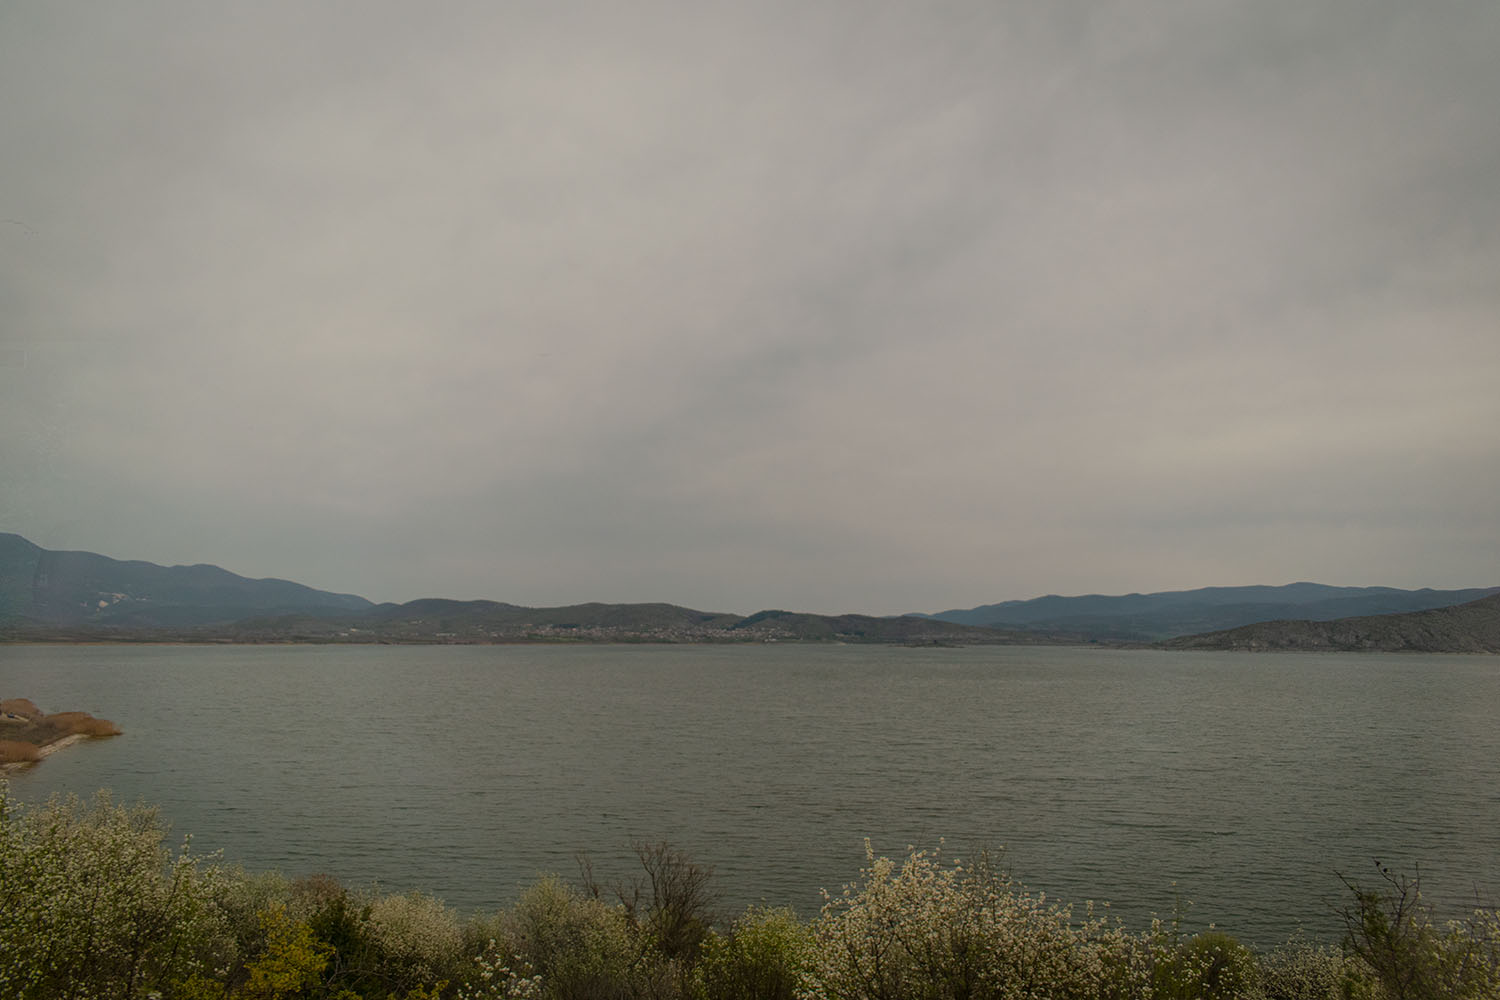 Η δυτική πλευρά της λίμνης Βεγορίτιδας. Στο βάθος ο οικισμός της Άρνισσας, Έδεσσας.